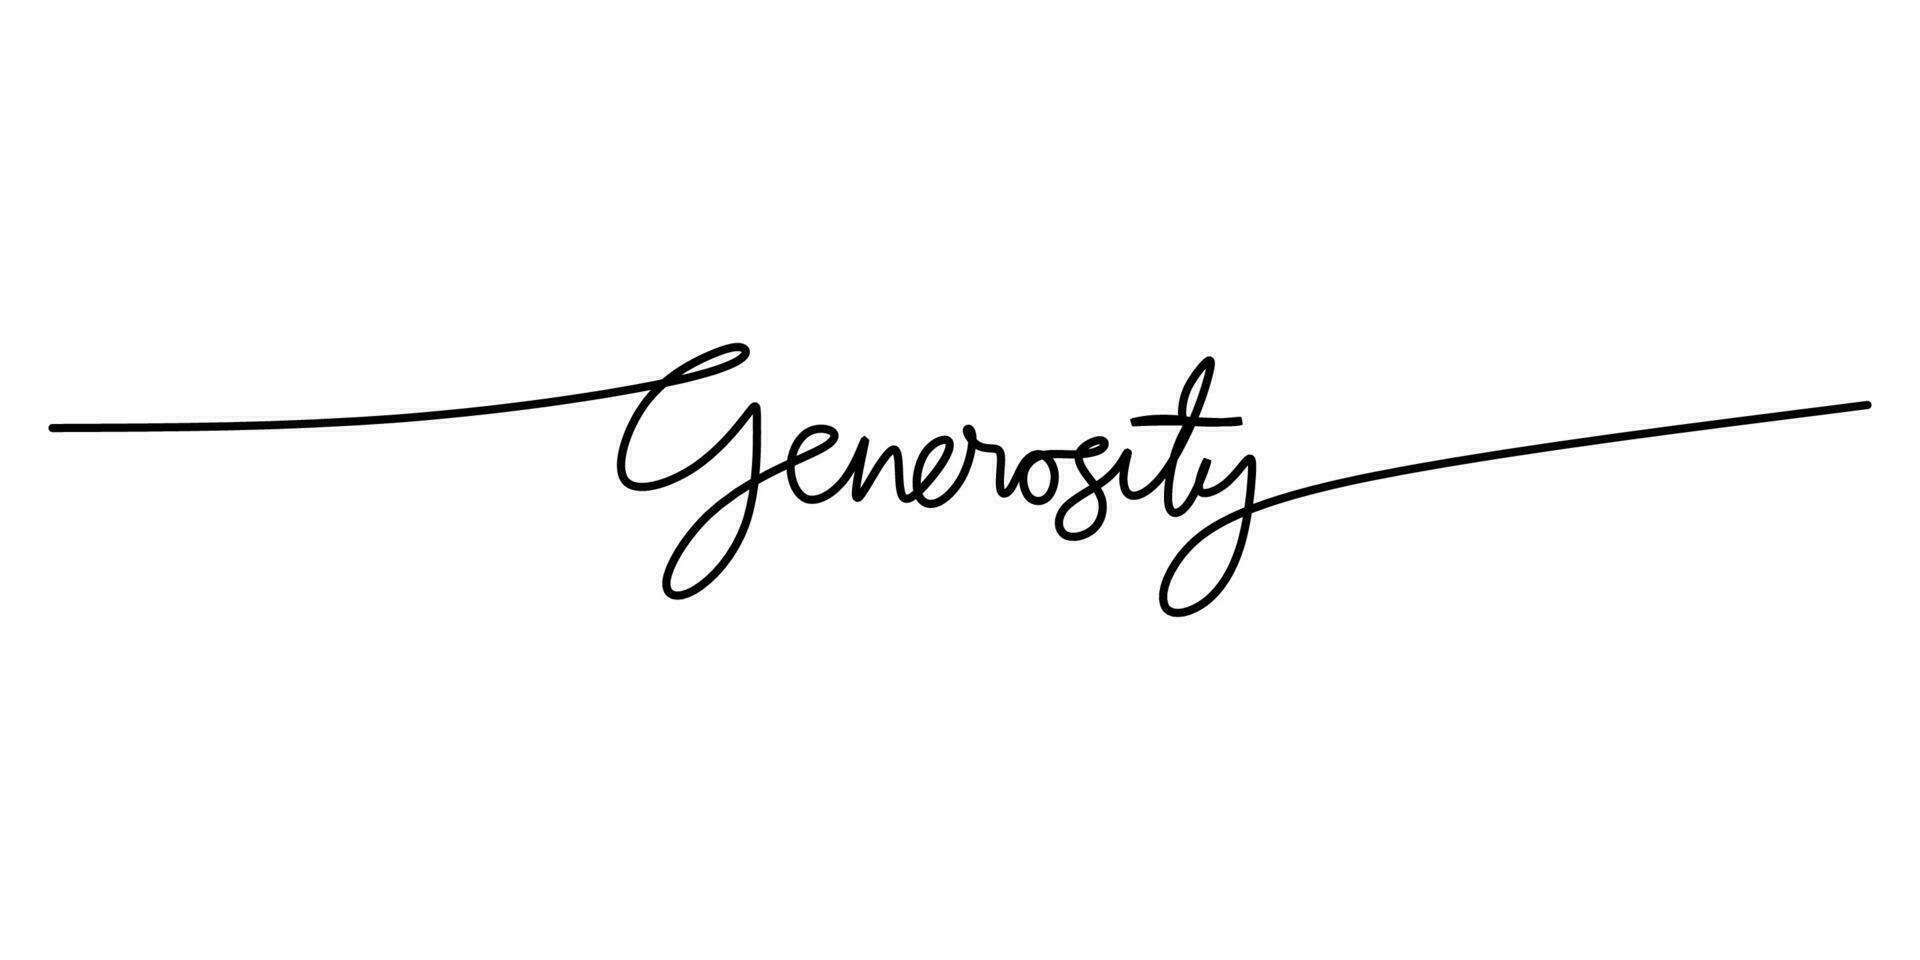 uno continuo línea dibujo tipografía línea Arte de generosidad palabra vector